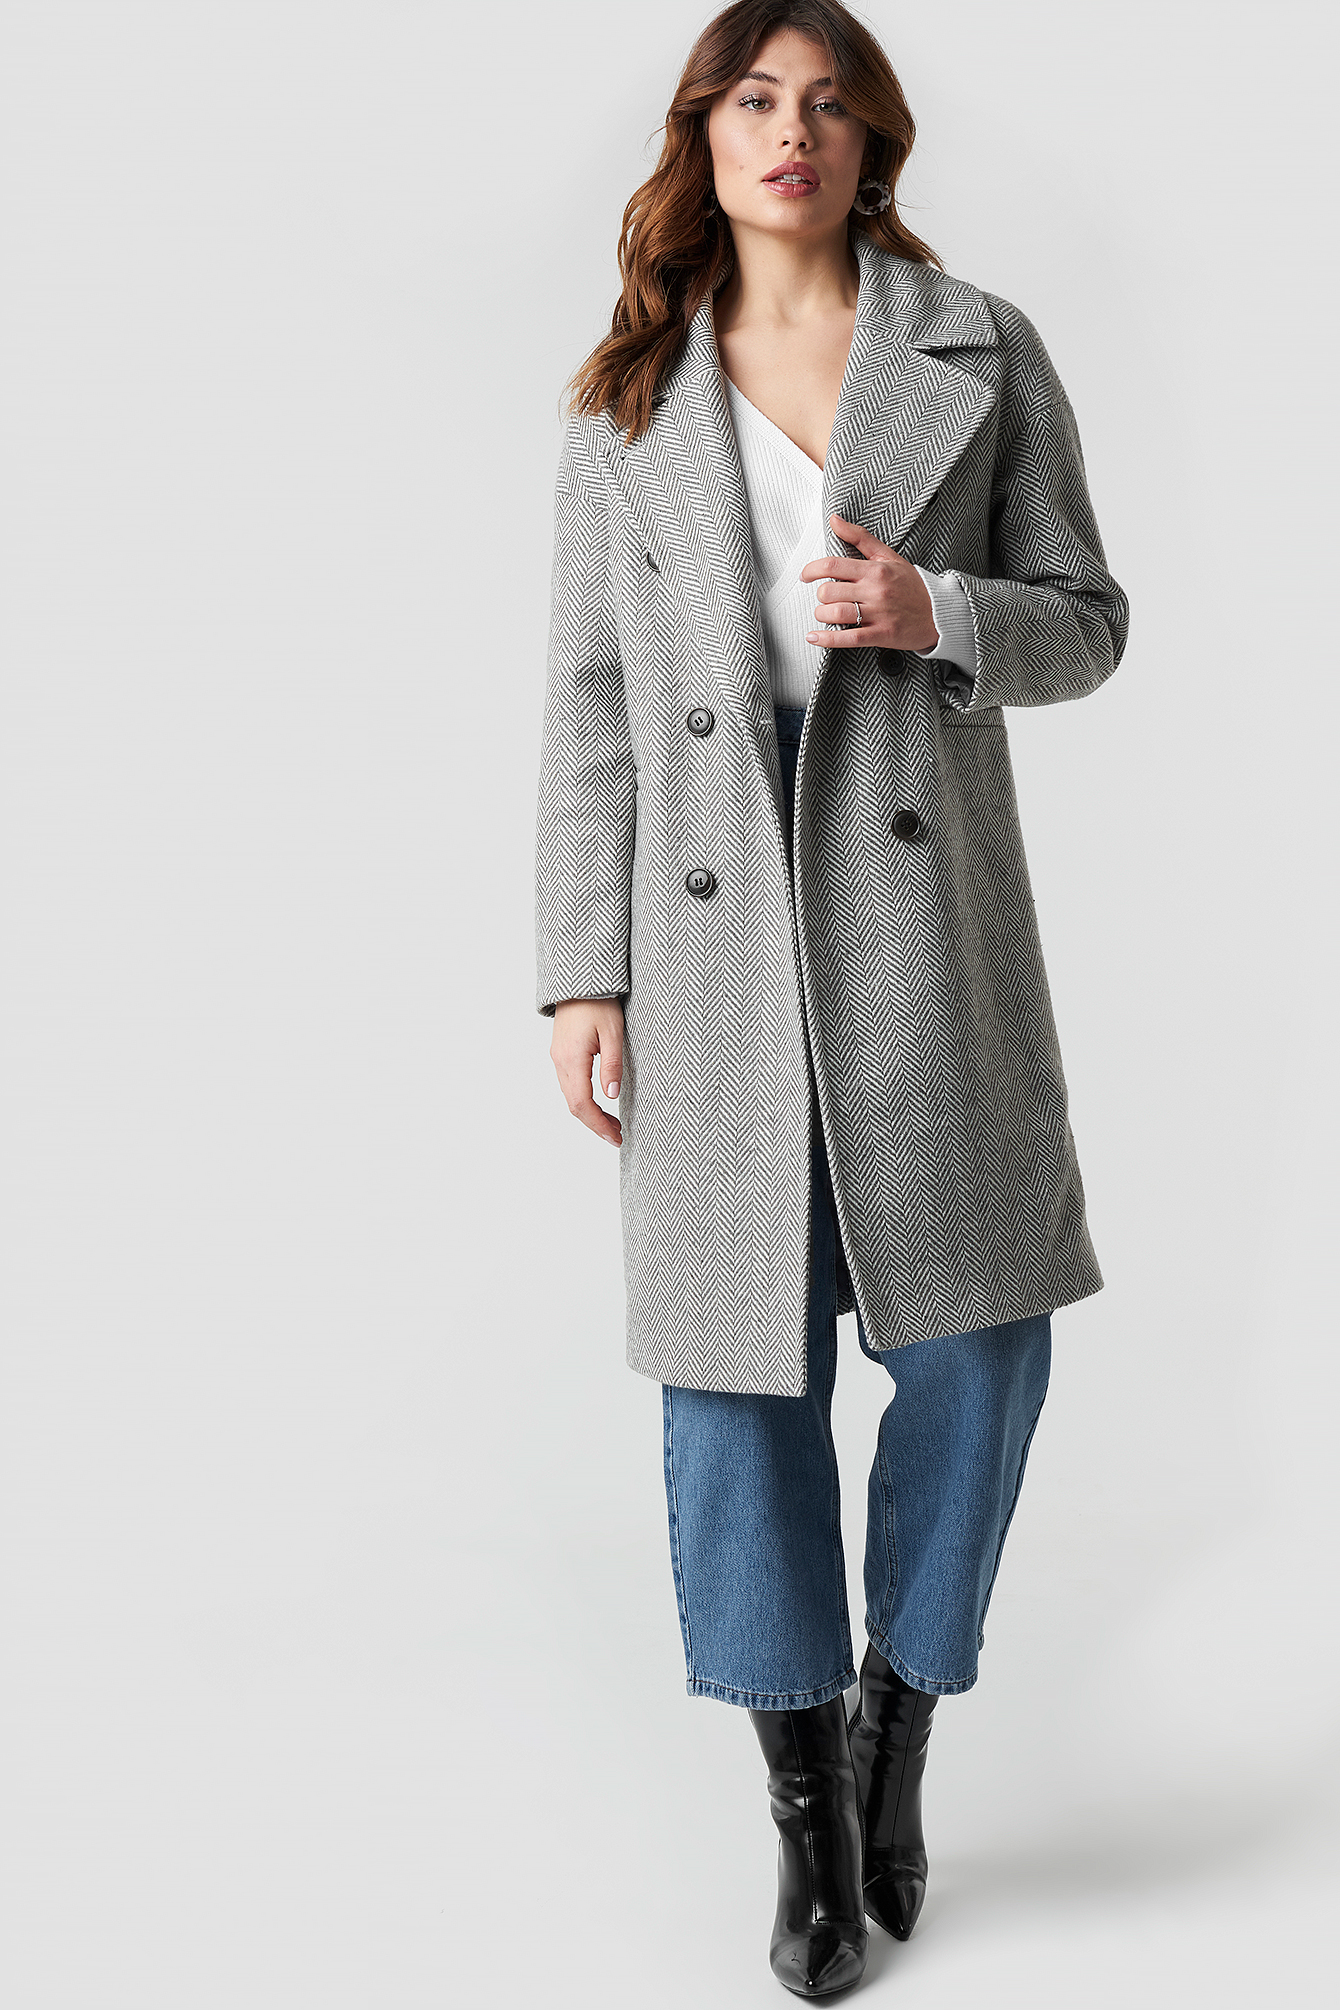 Grey Pattern NA-KD Trend Herringbone Double Breasted Coat